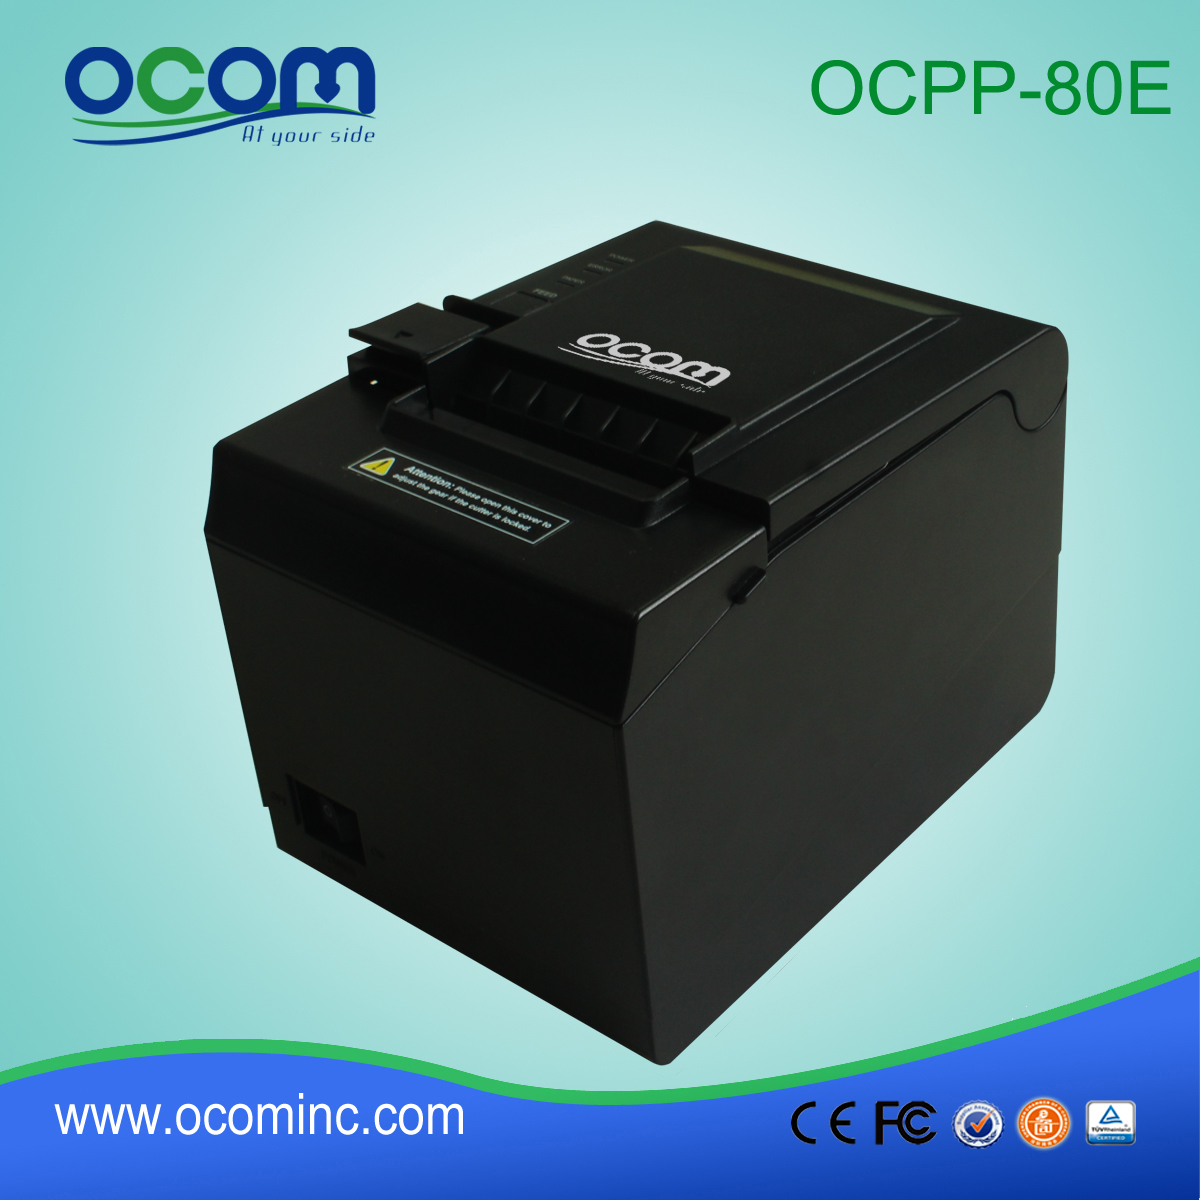 OCPP-80e meilleure qualité 80 mm POS thermique imprimante prix